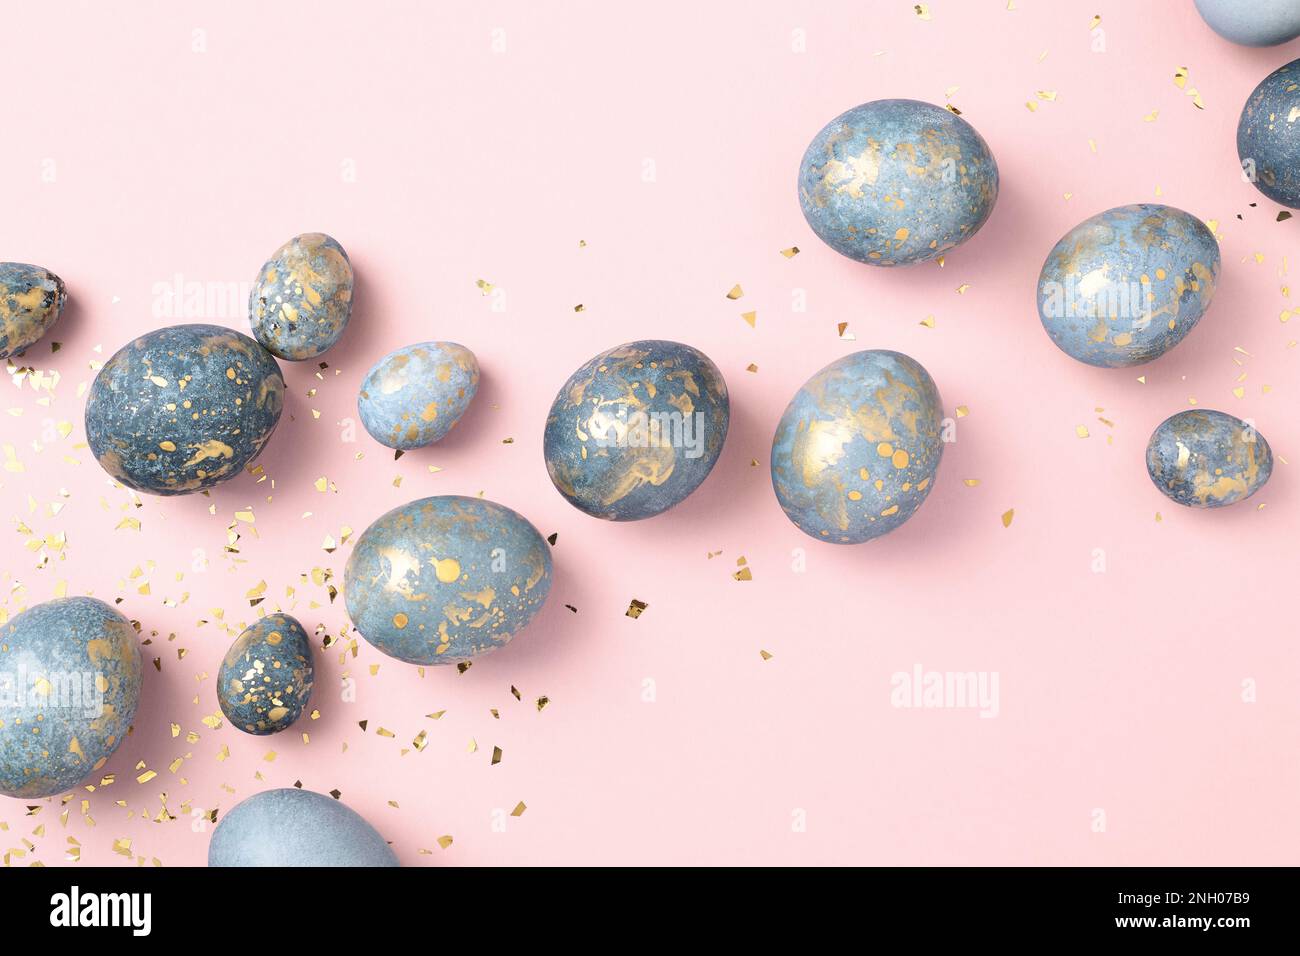 Huevos de Pascua azules sobre fondo rosa con confeti de oro. Tarjeta de felicitación chic de Pascua. Celebración de Pascua. Foto de stock